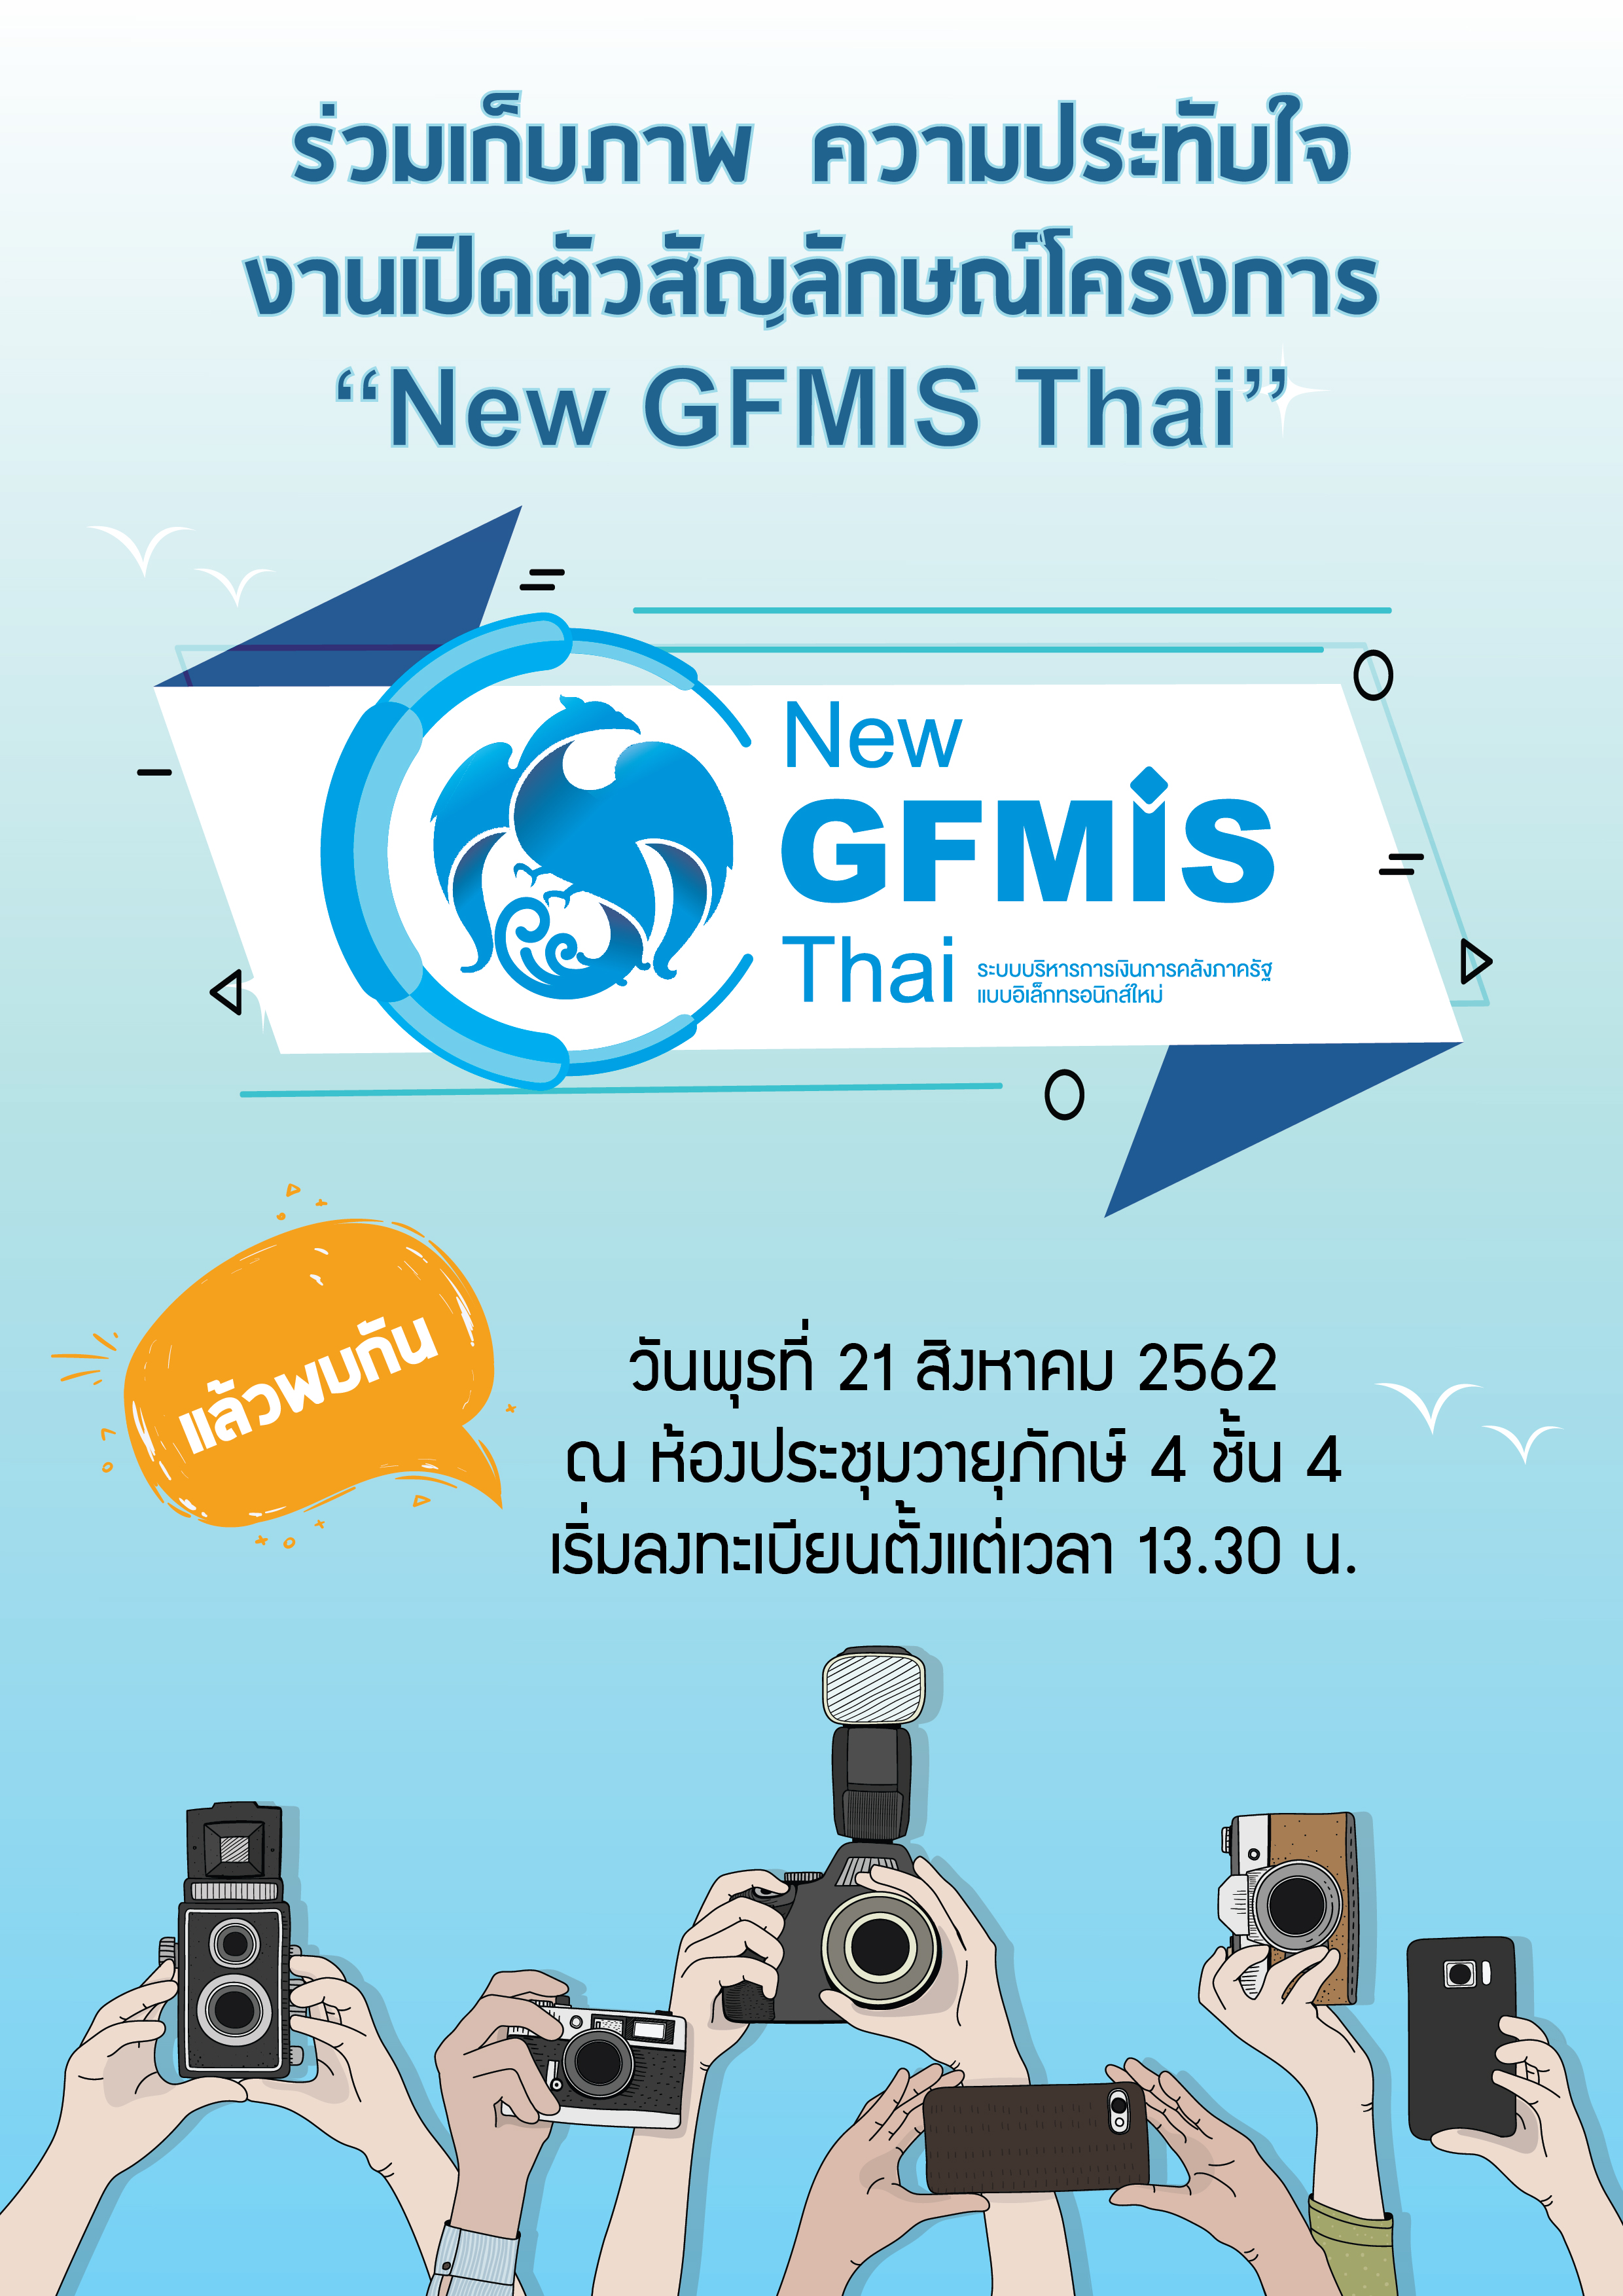 ขอเชิญผู้ร่วมงานร่วมสนุกกับกิจกรรม “New Logo New GFMIS Thai ”